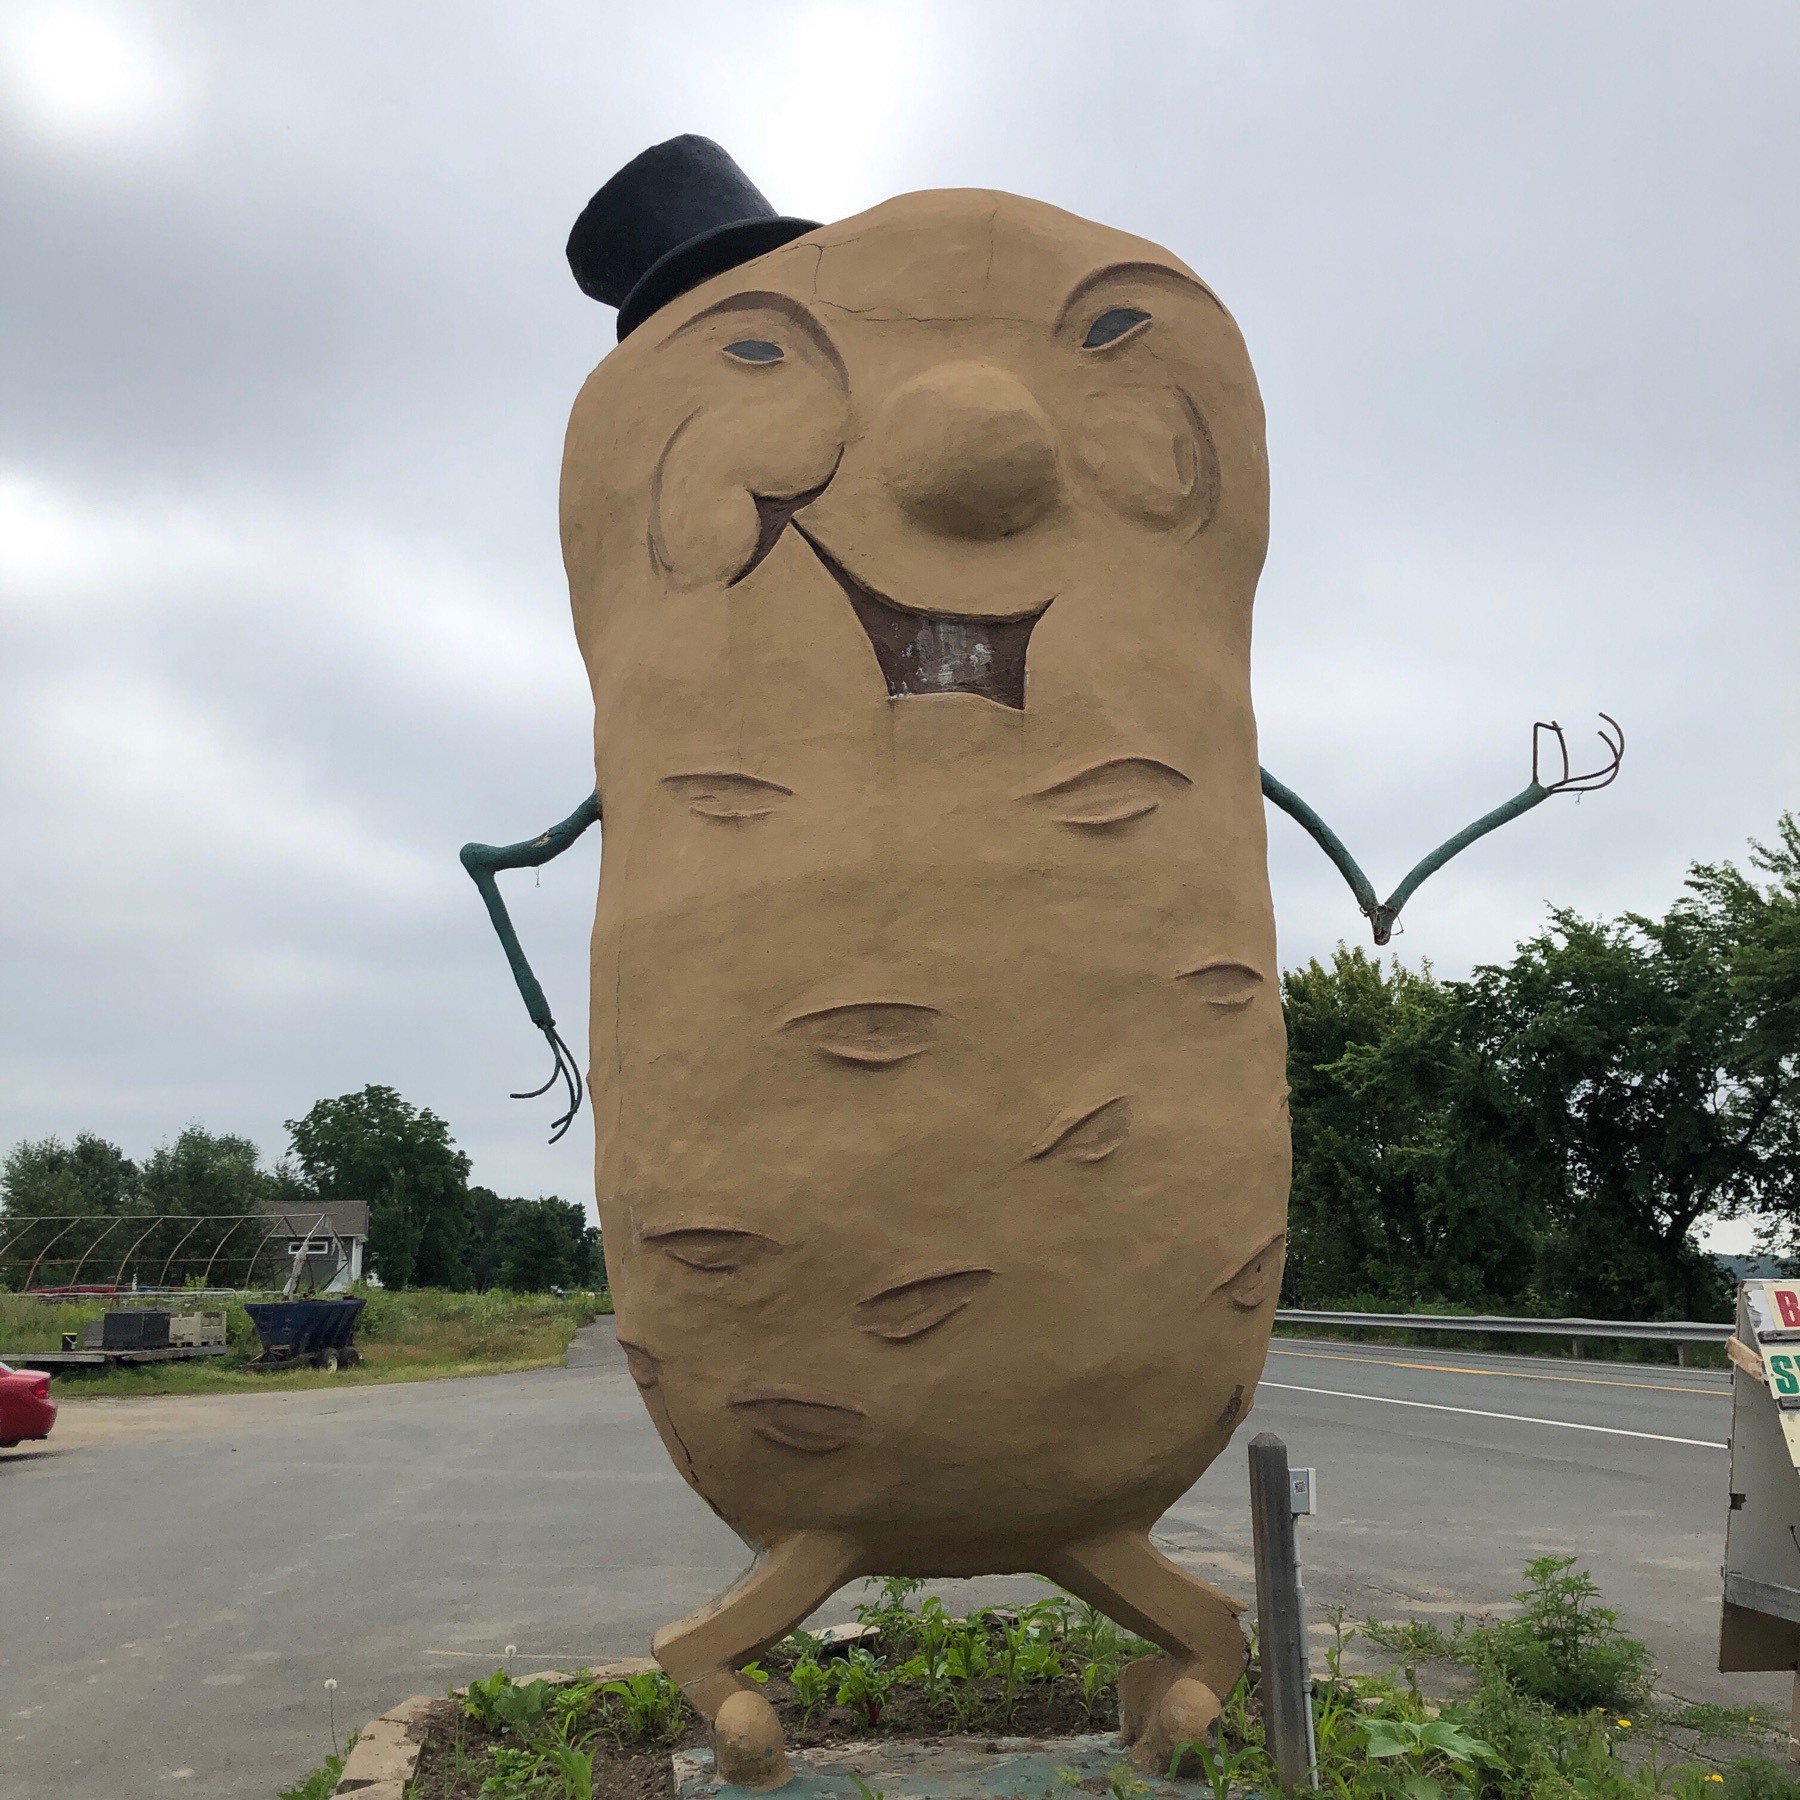 Giant potato person statue. 